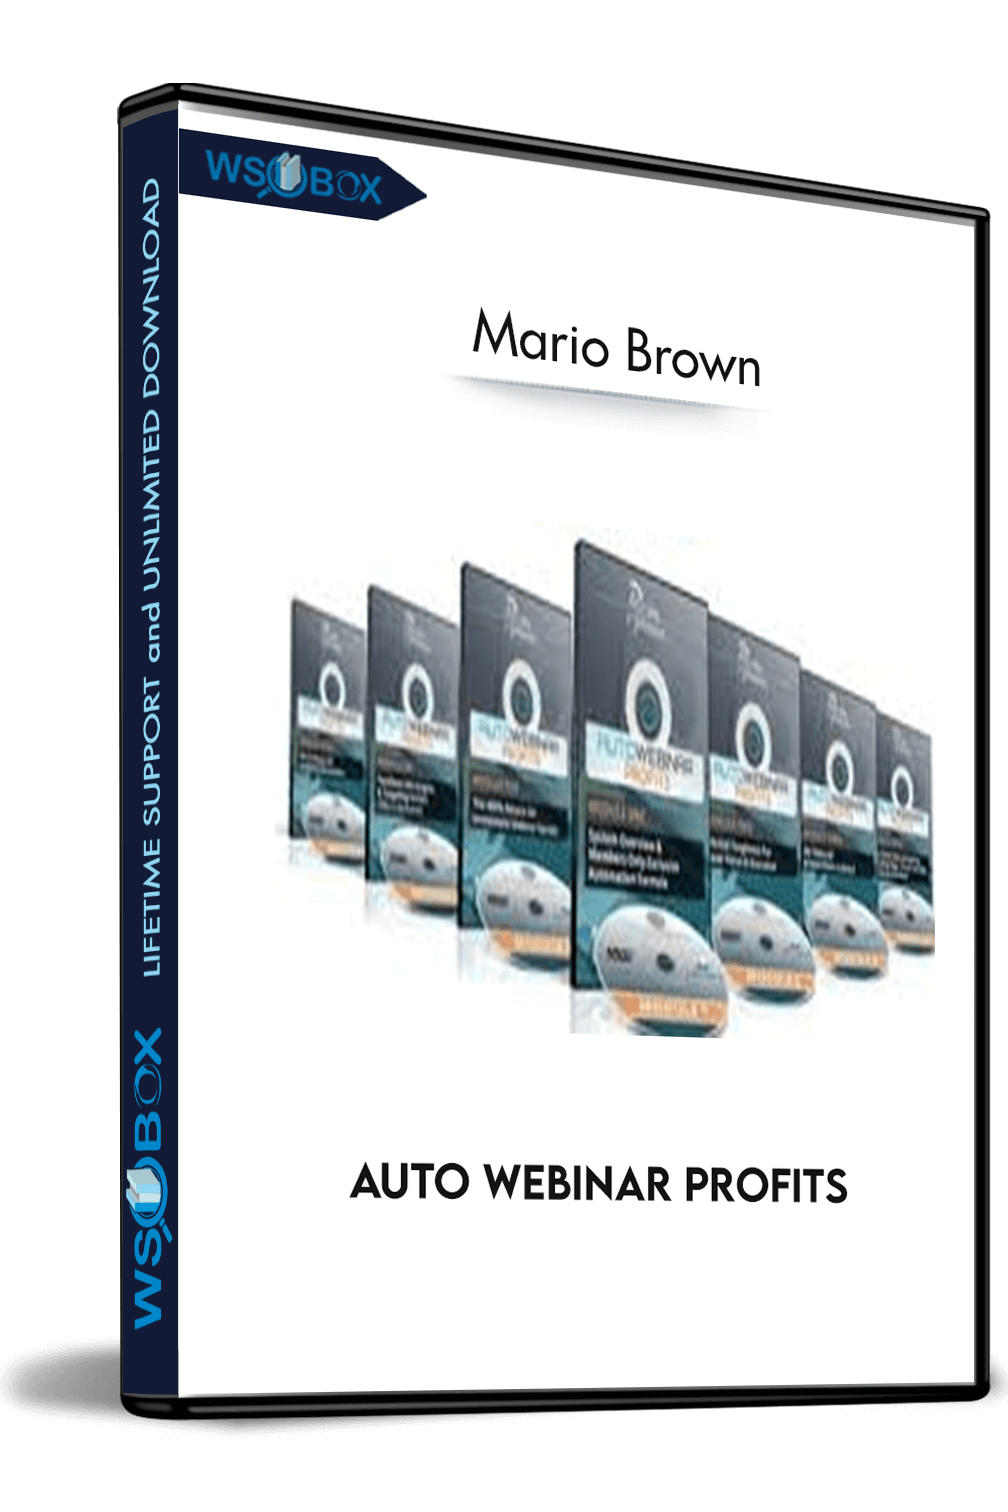 Auto Webinar Profits – Mario Brown